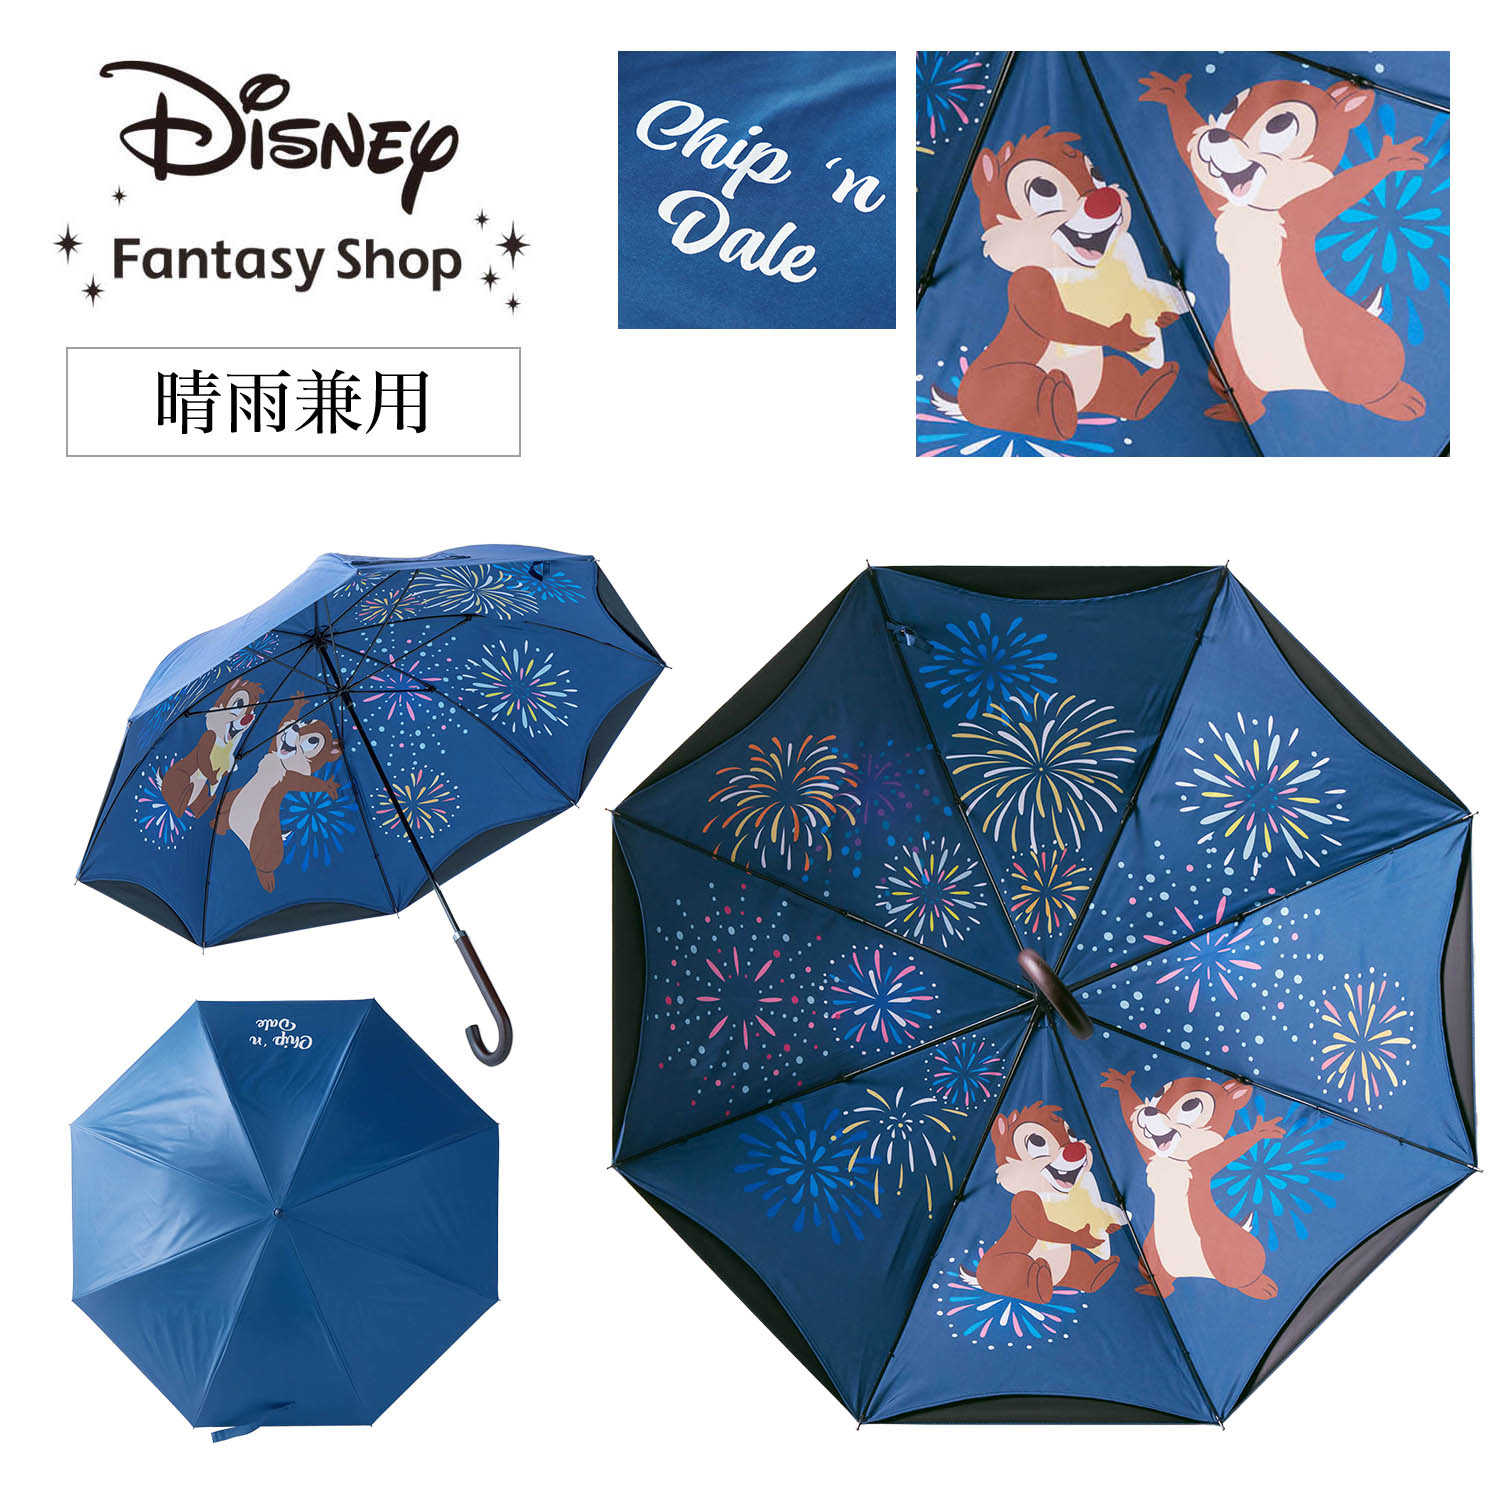 １級遮光生地使用の２枚張り晴雨兼用傘「チップ＆デール」(ディズニー 